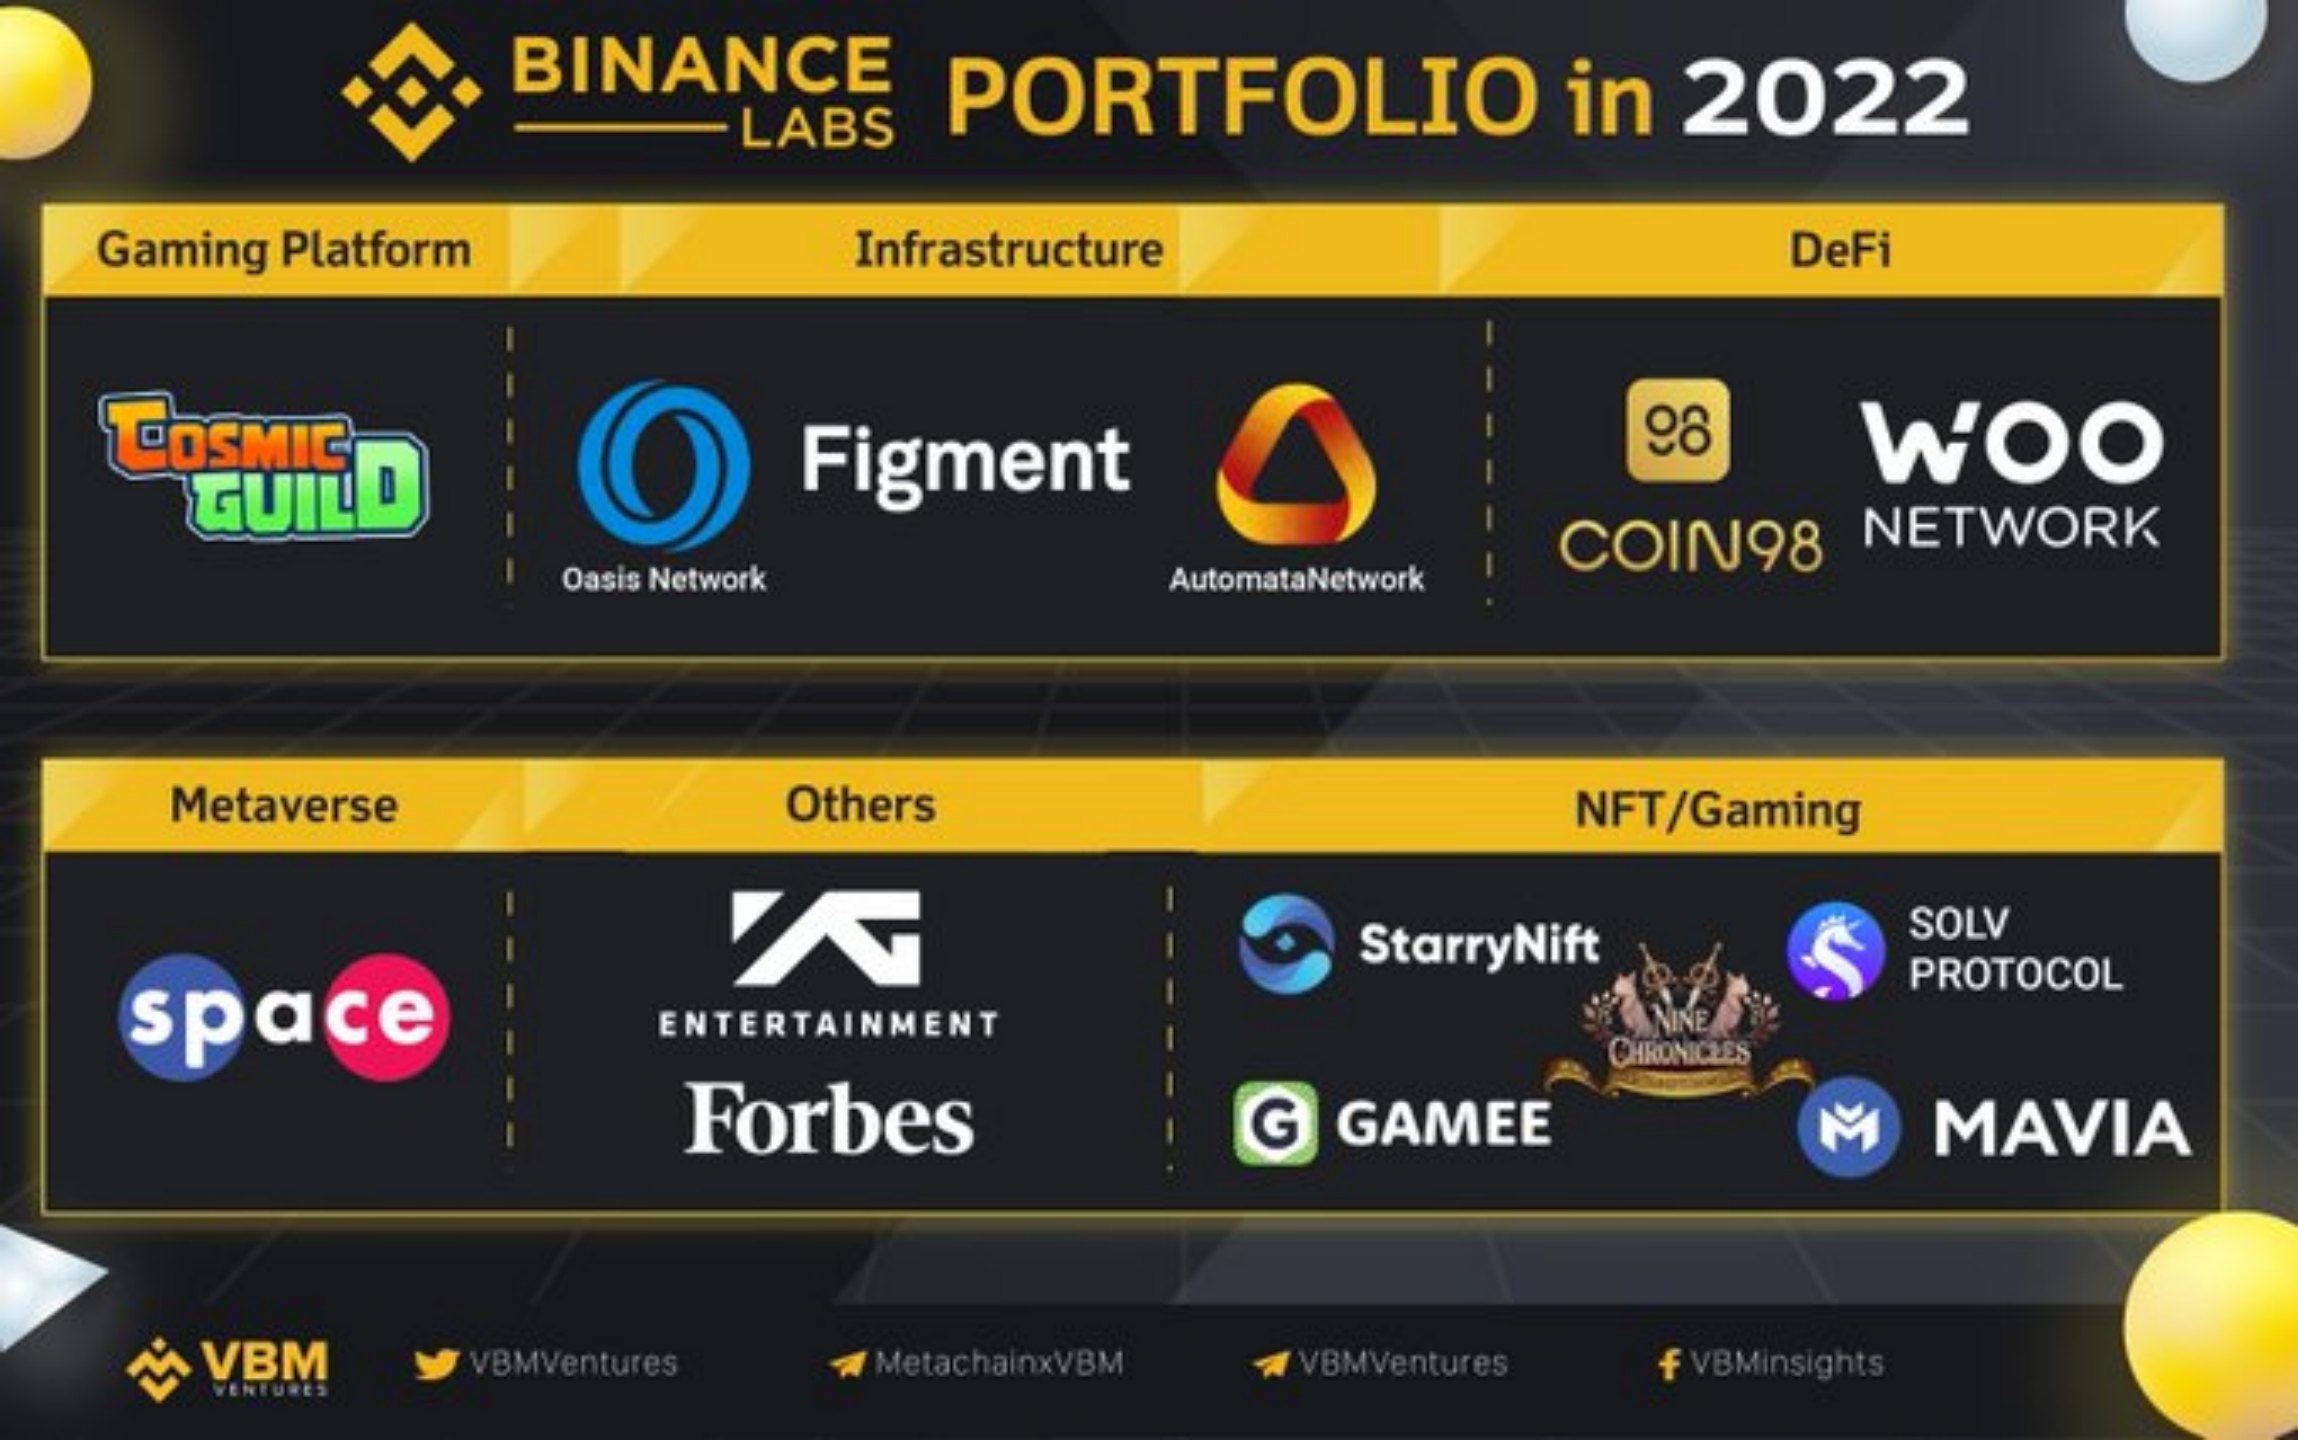 Binance Labs Portfolio in 2022